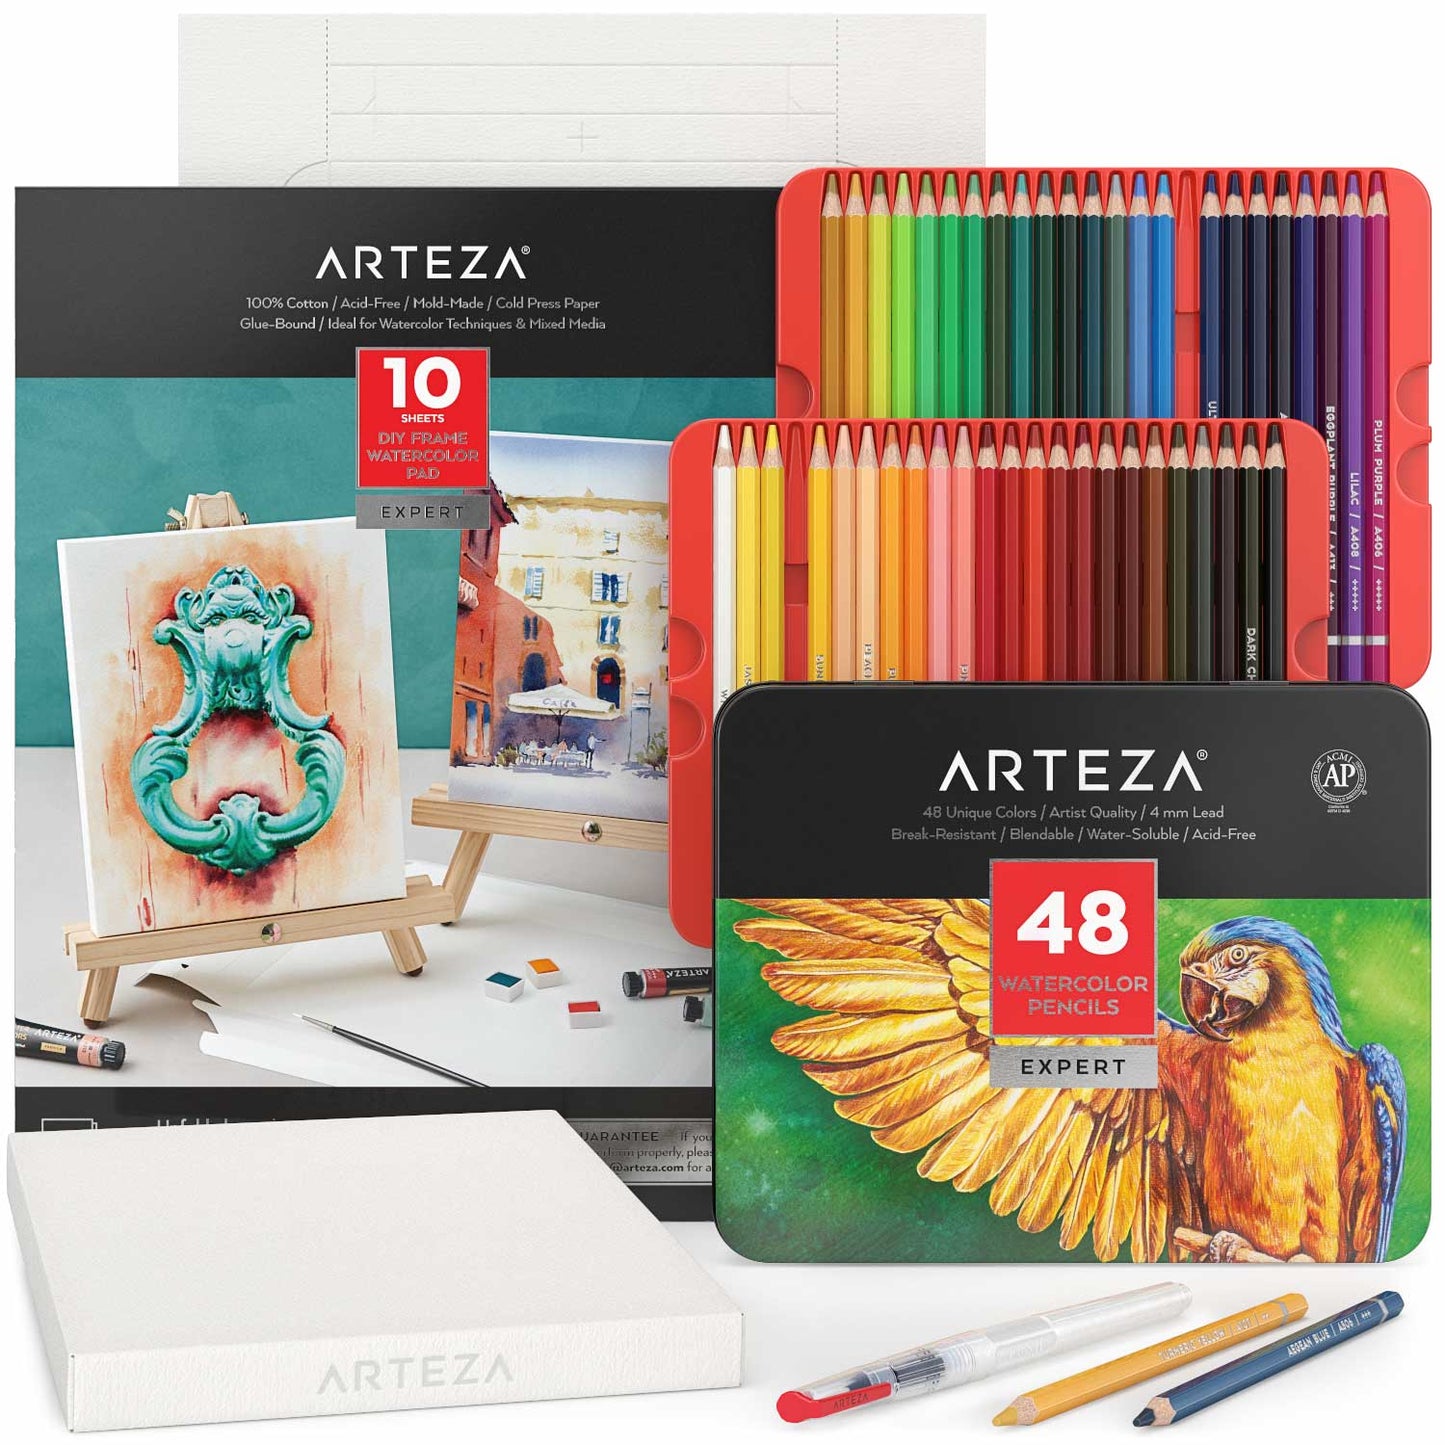 Arteza Watercolor Review & Building a Custom Palette 